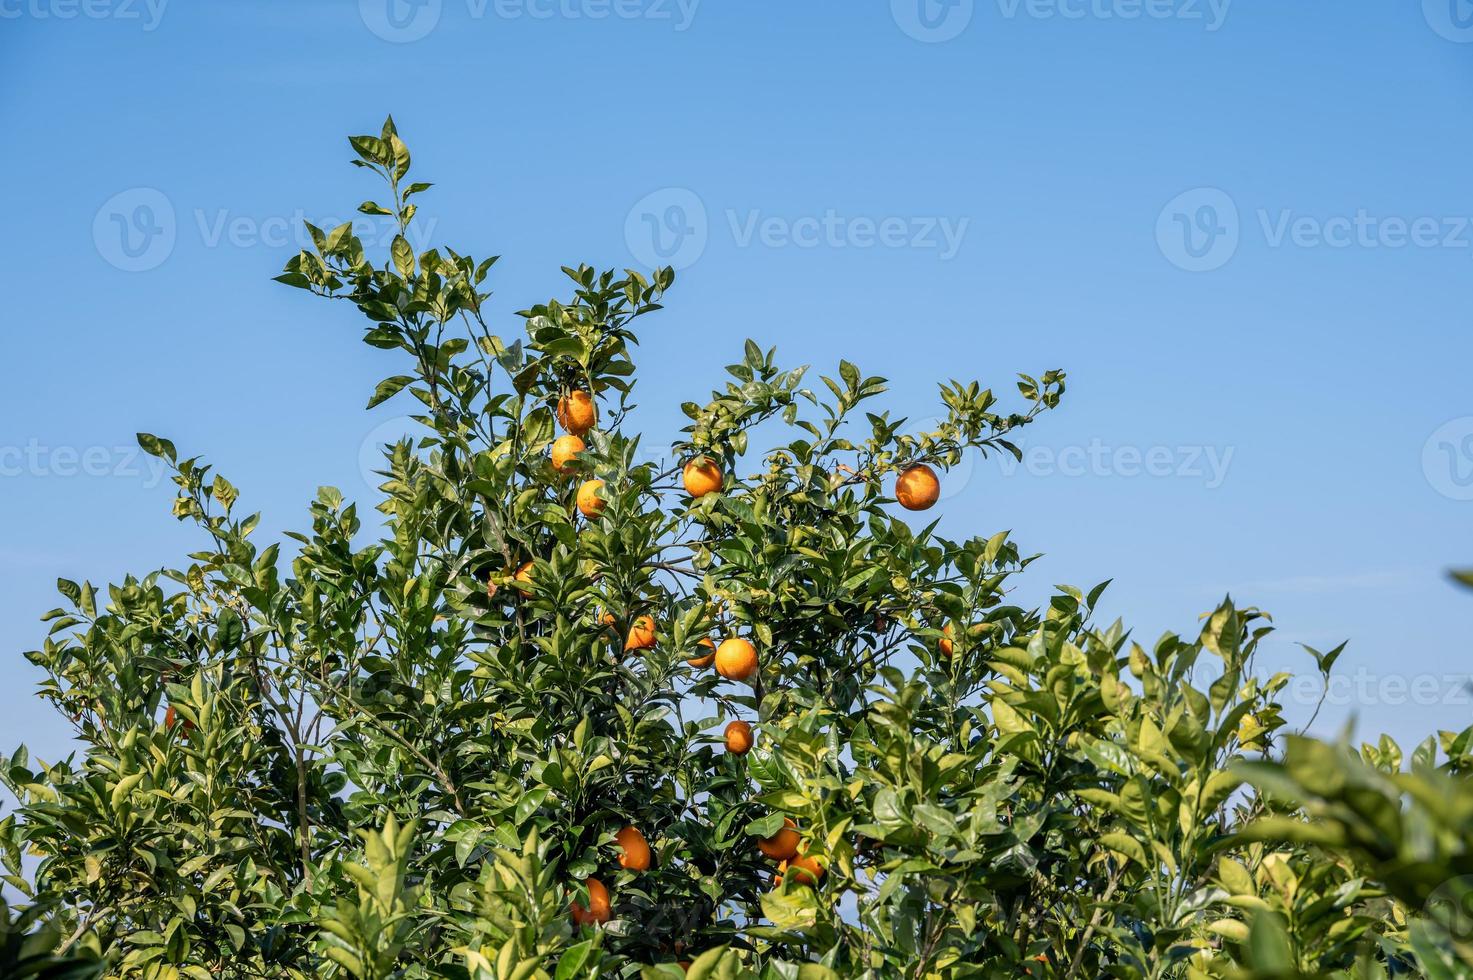 huertos de naranjas bajo un cielo despejado y nubes blancas foto